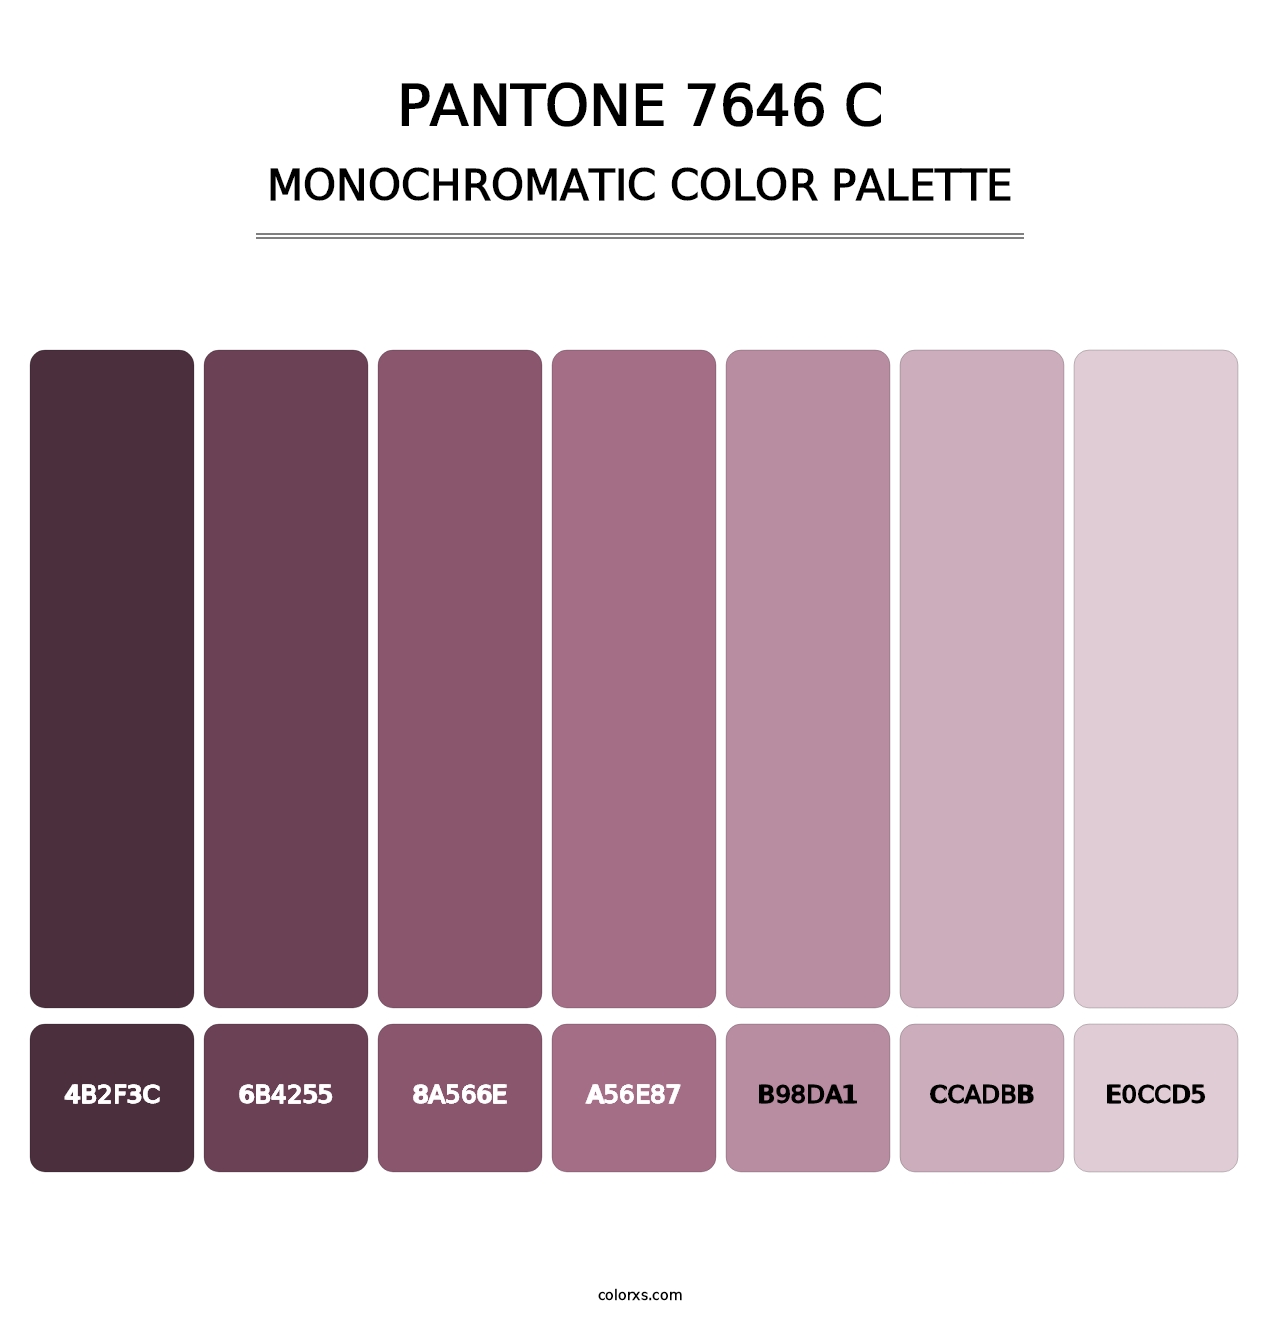 PANTONE 7646 C - Monochromatic Color Palette